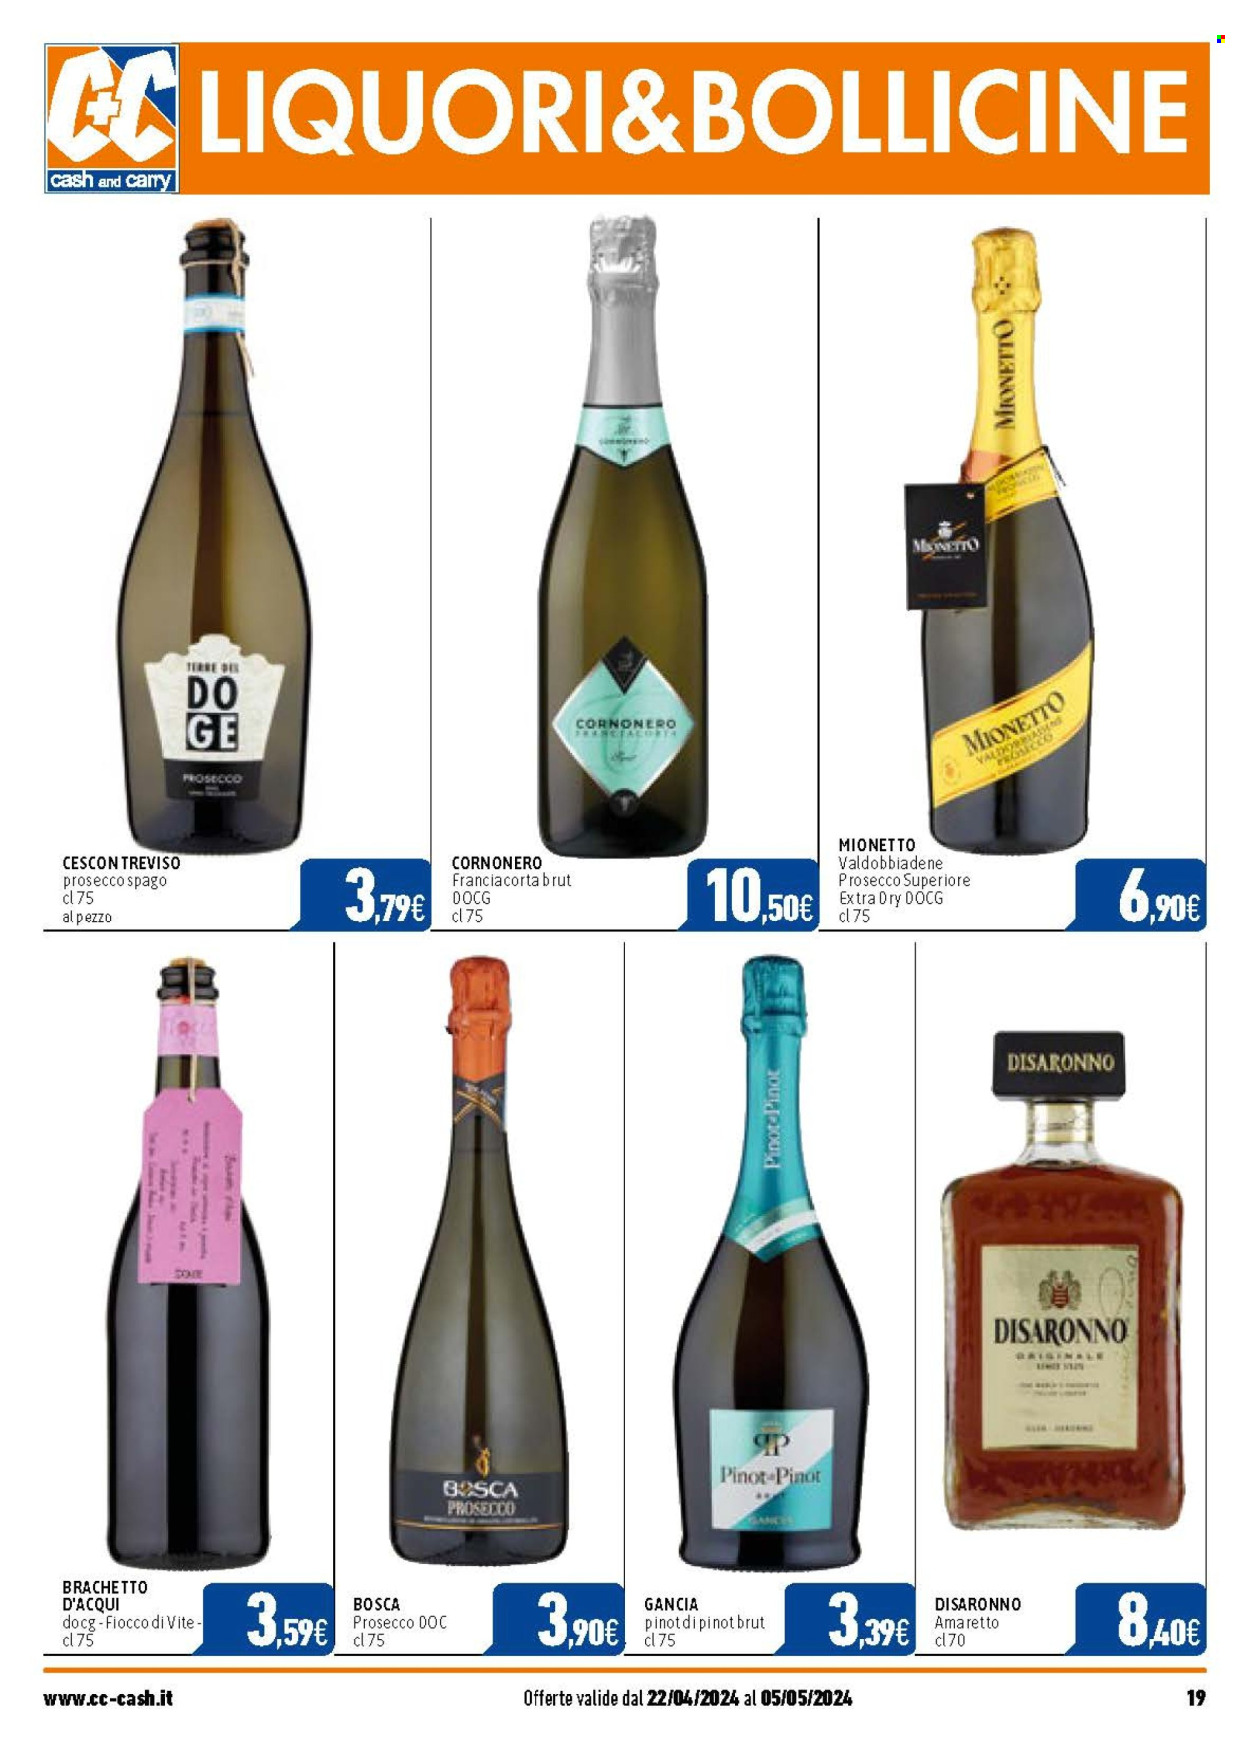 thumbnail - Volantino C+C Cash & Carry - 22/4/2024 - 5/5/2024 - Prodotti in offerta - bevanda alcolica, Valdobbiadene, Prosecco, amaretto, Disaronno. Pagina 19.